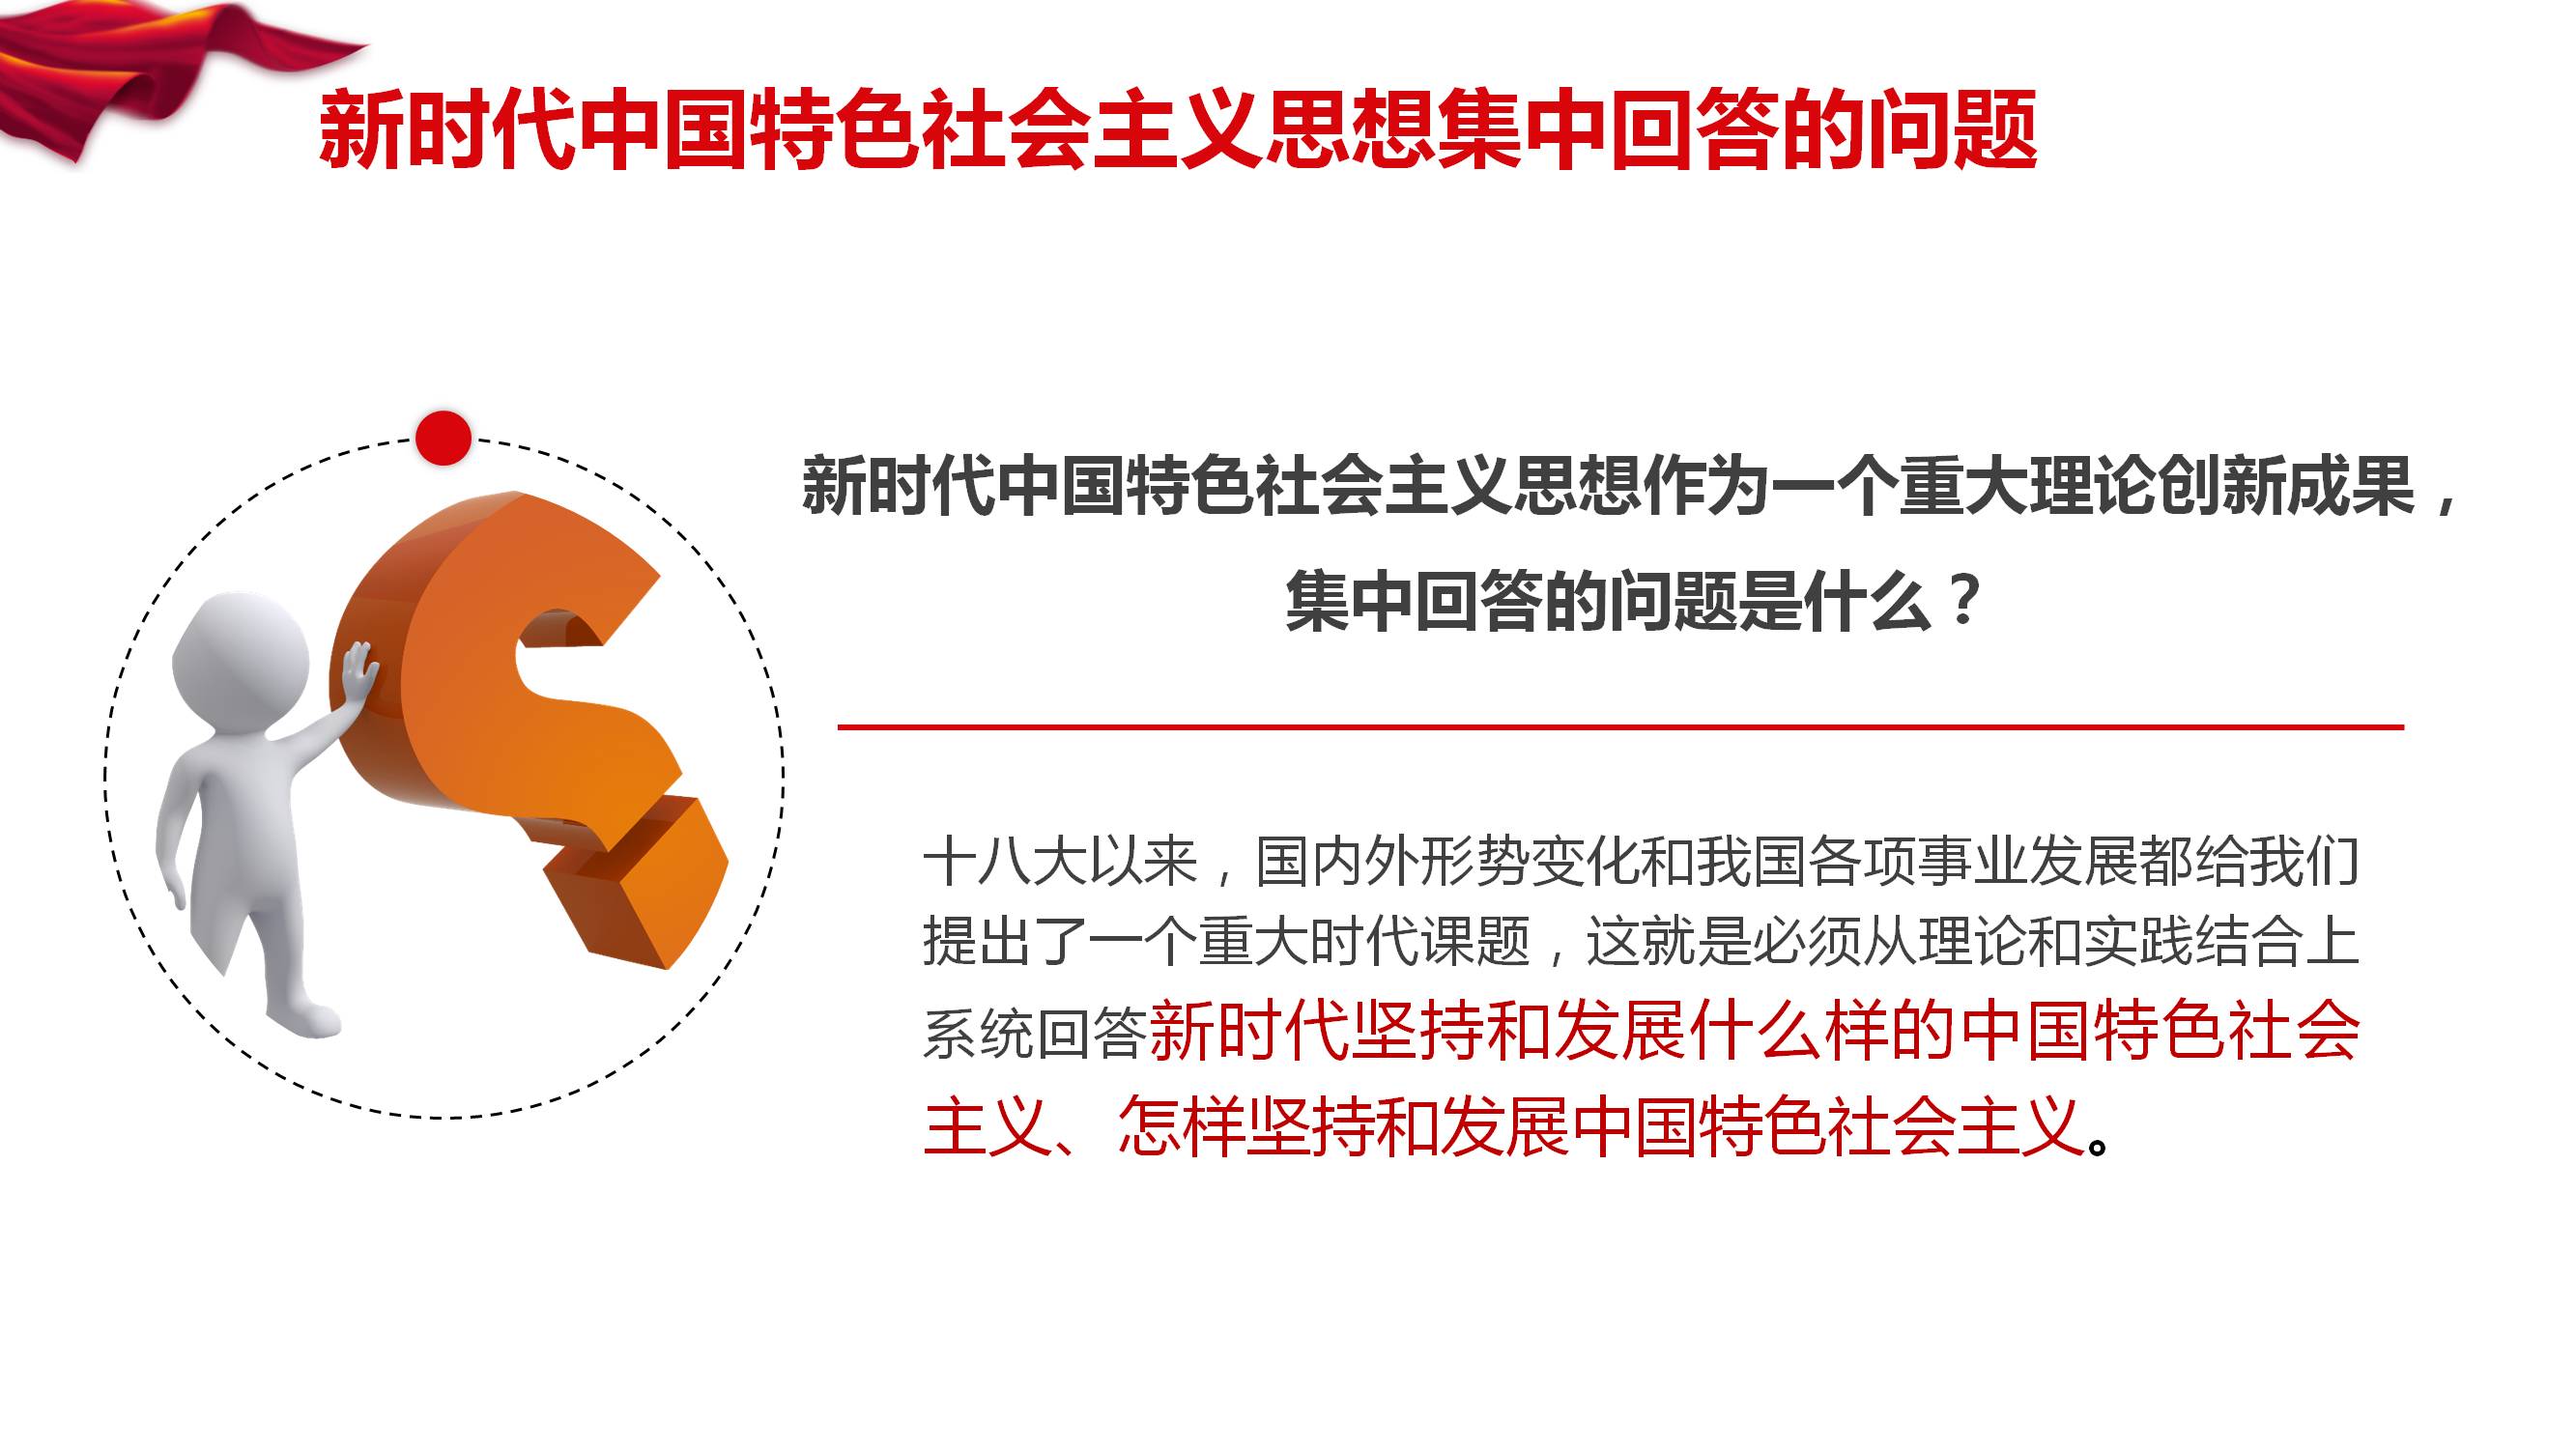 [PPT]中国兵器装备集团公司中国兵器装备研究院《奋力开创 新时代中国特色社会主义  美好未来》